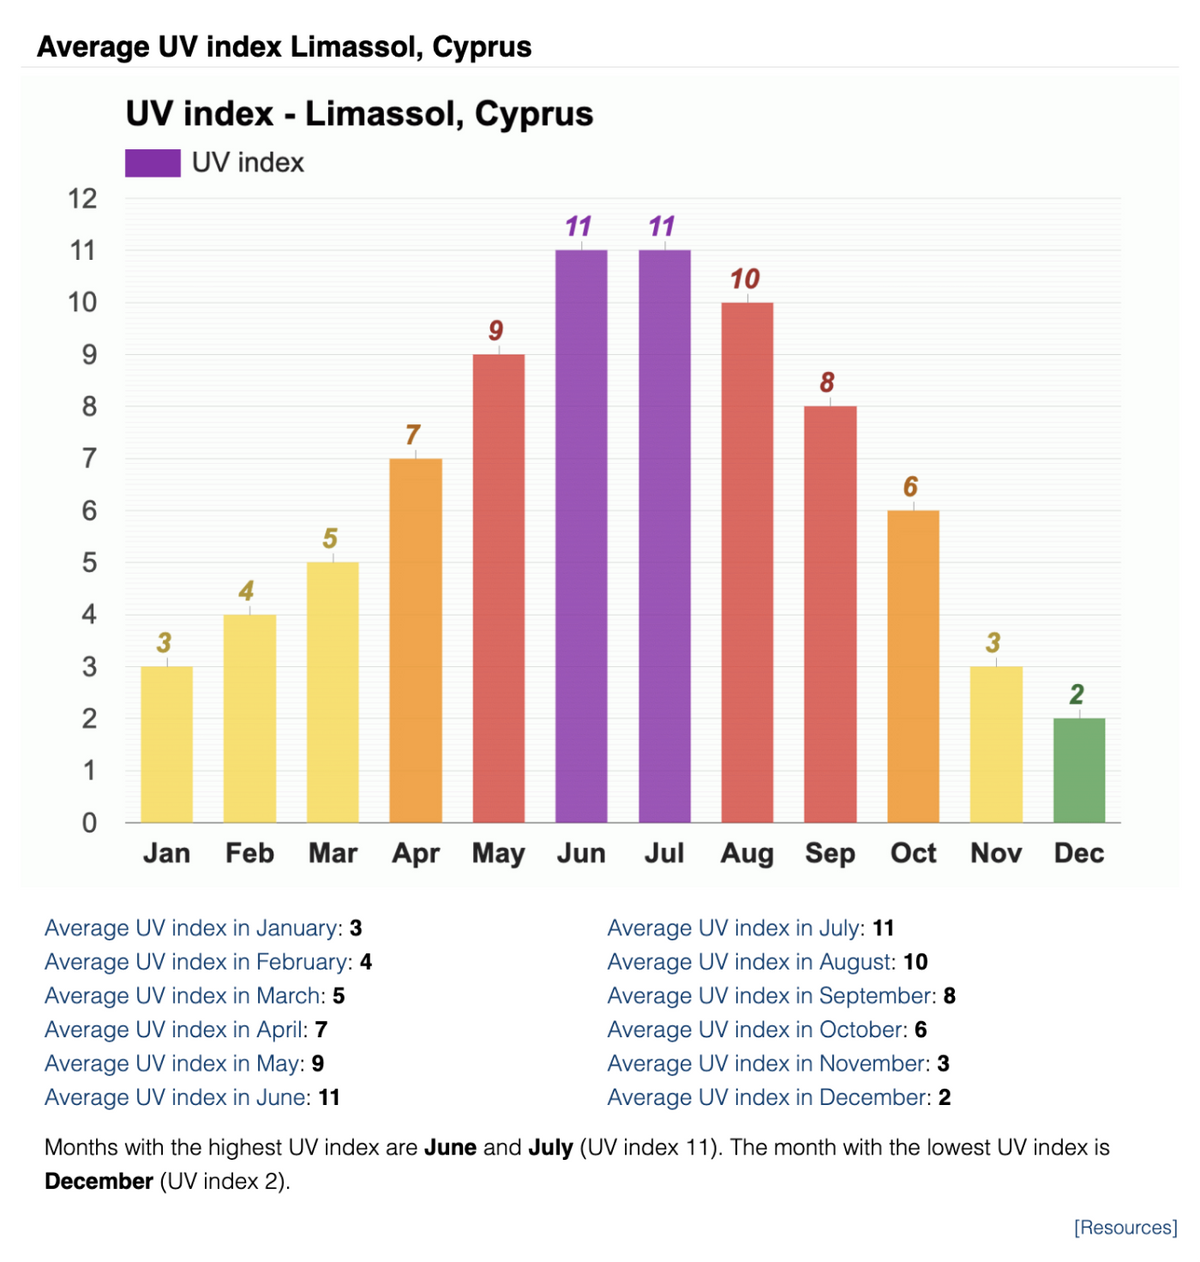 С февраля по октябрь на Кипре высокие значения индекса ультрафиолетового излучения — от 4 до 11. ВОЗ рекомендует защищаться от солнца при&nbsp;индексе 3 и выше. Источник: weather-atlas.com